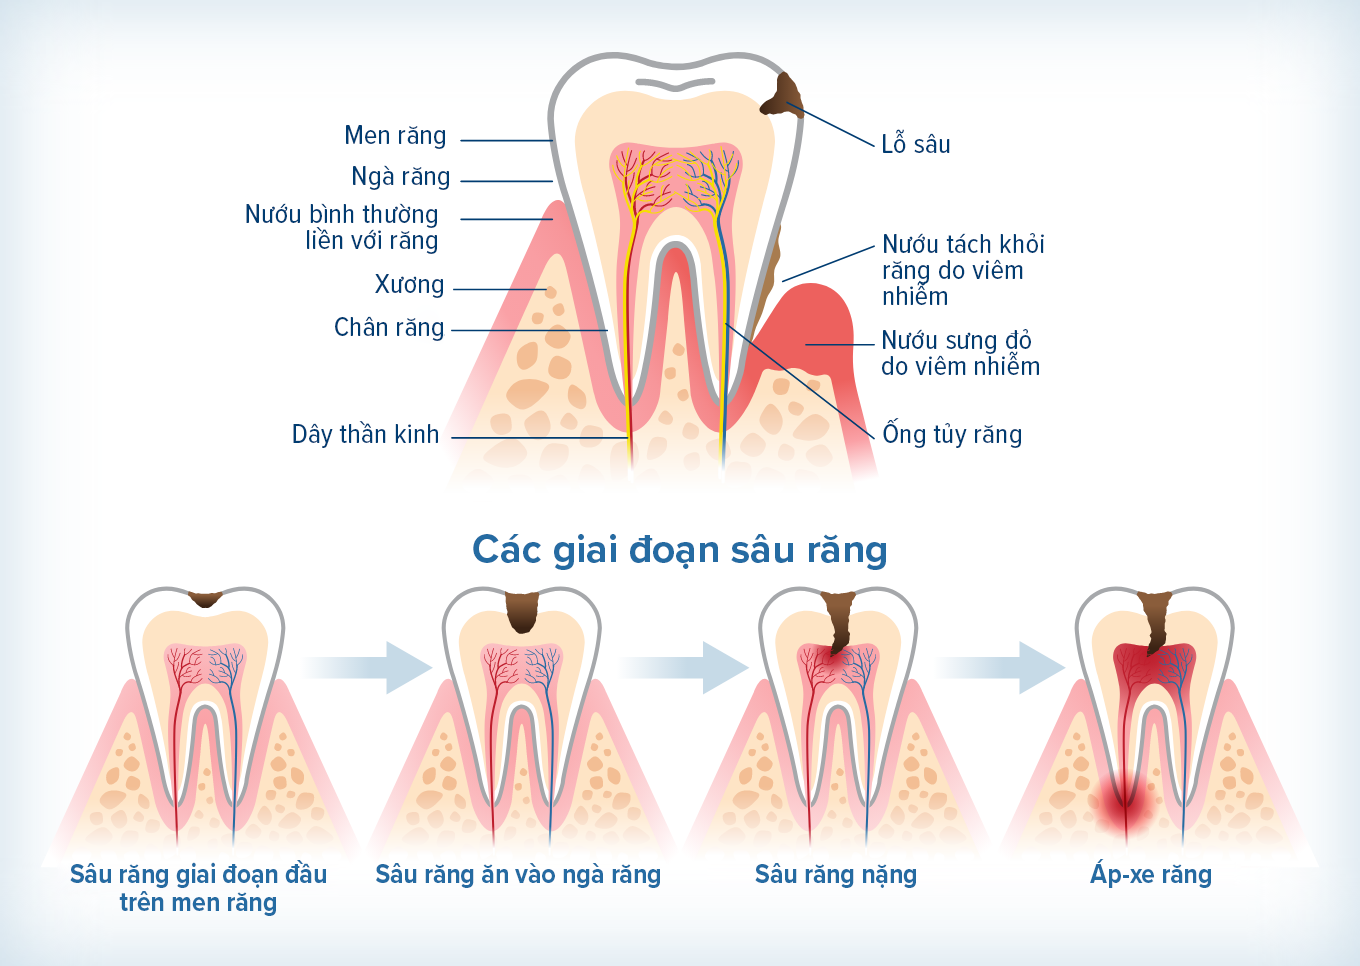 Hình minh họa dưới đây cho thấy tiến trình sâu răng, từ sâu răng giai đoạn đầu trên men răng cho tới áp-xe răng.